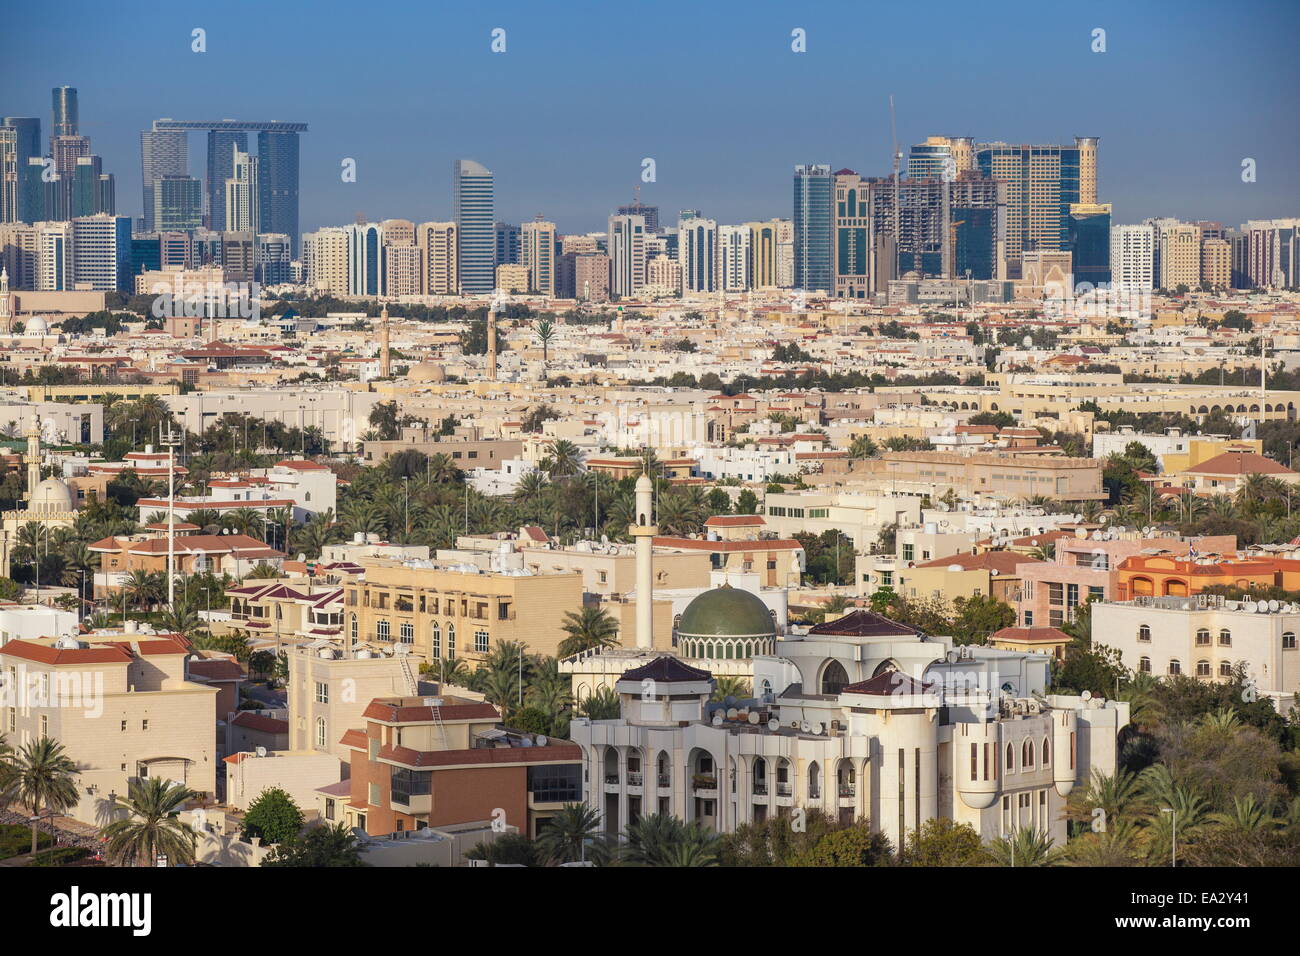 View of city skyline, Abu Dhabi, United Arab Emirates, Middle East Stock Photo